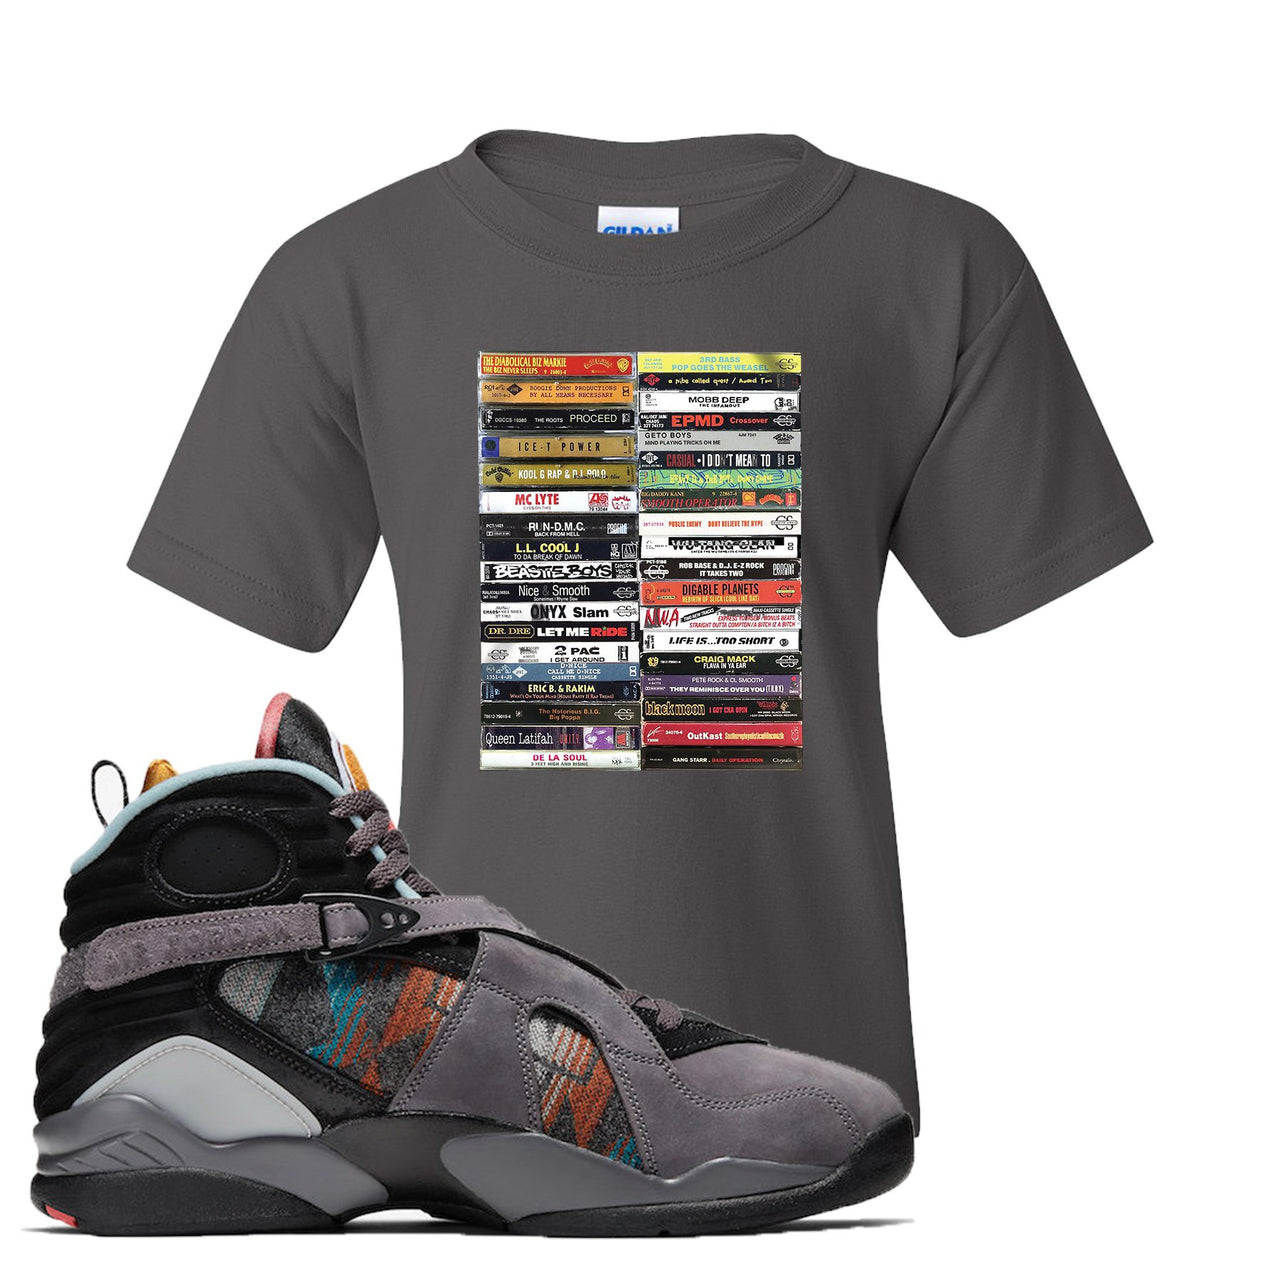 Jordan 8 N7 Pendleton Cassette Charcoal Gray Sneaker Hook Up Kid's T-Shirt